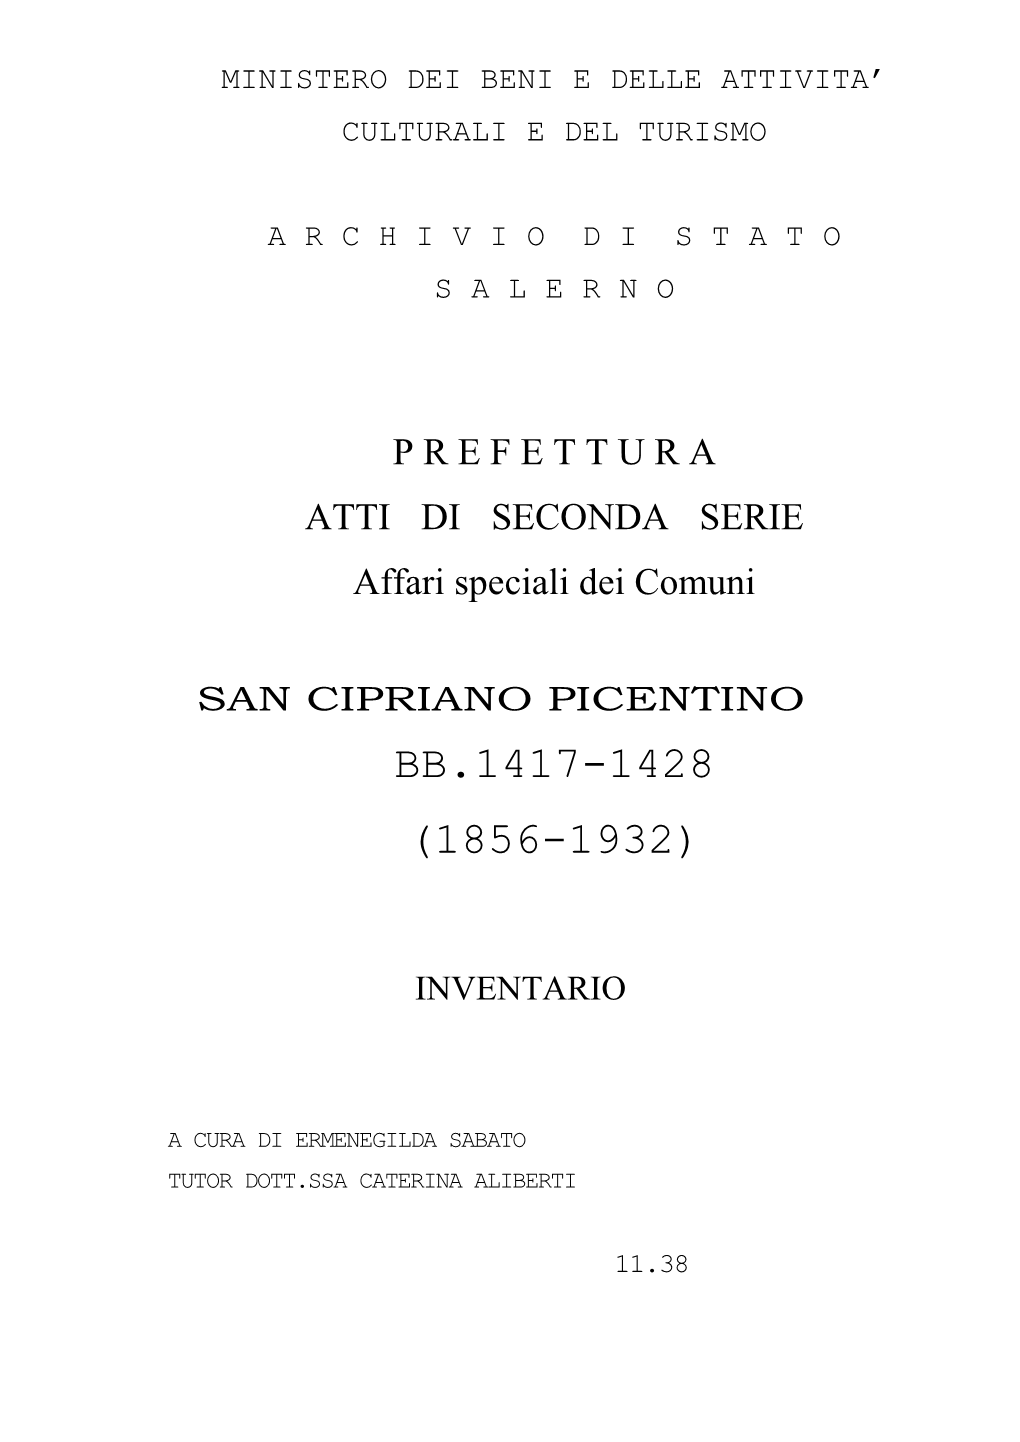 S. Cipriano Picentino